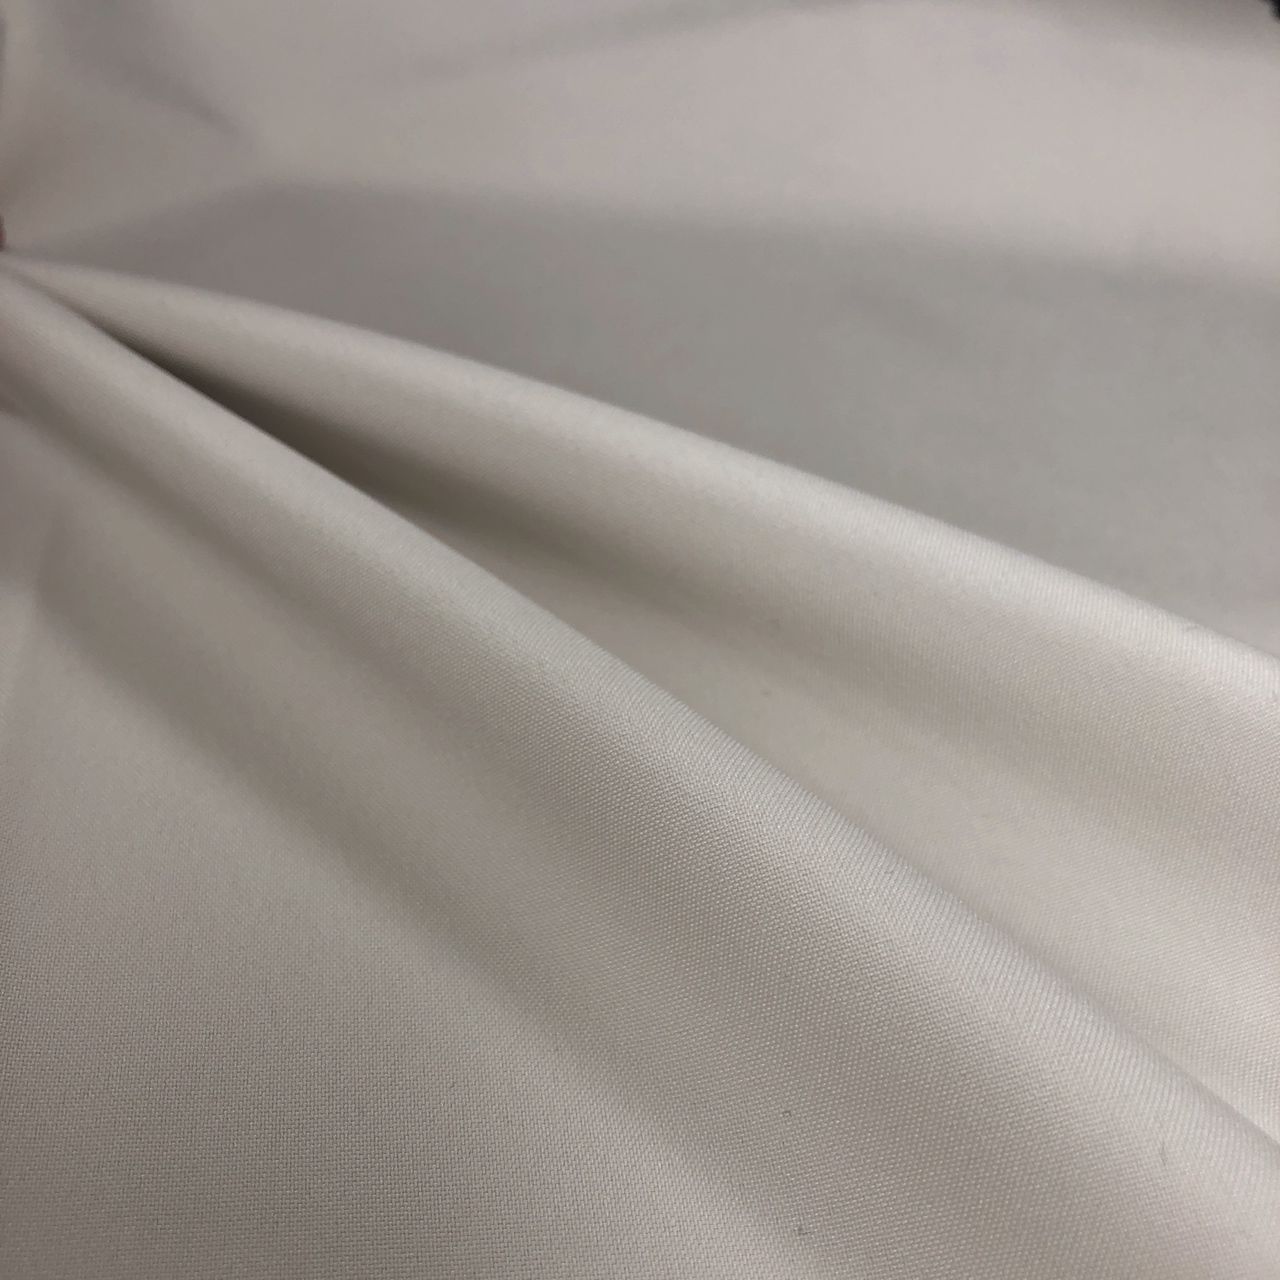 Plain White 100% Cotton Fabric Material - Pure White Cotton